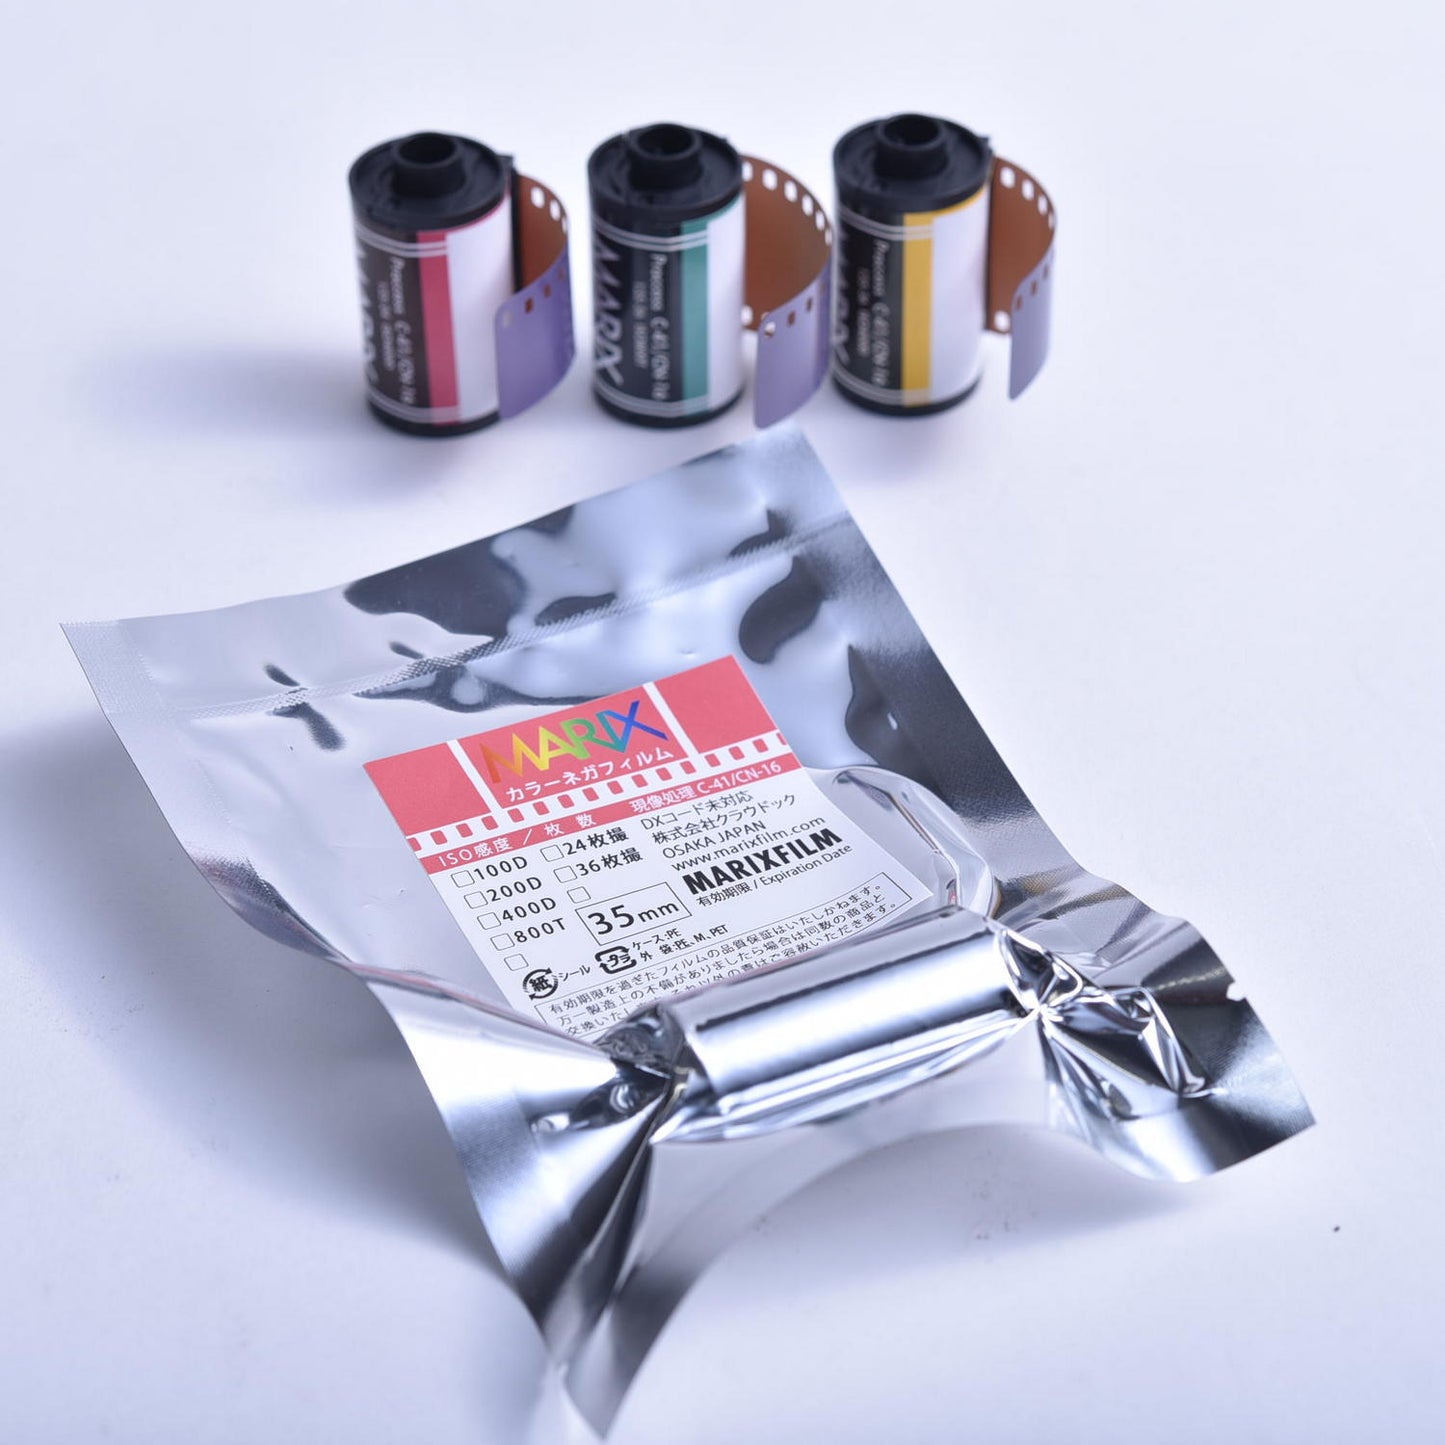 [Free shipping 10 pieces set] MARIX color negative film 400D 36 sheets MARIX Color NegaFilm